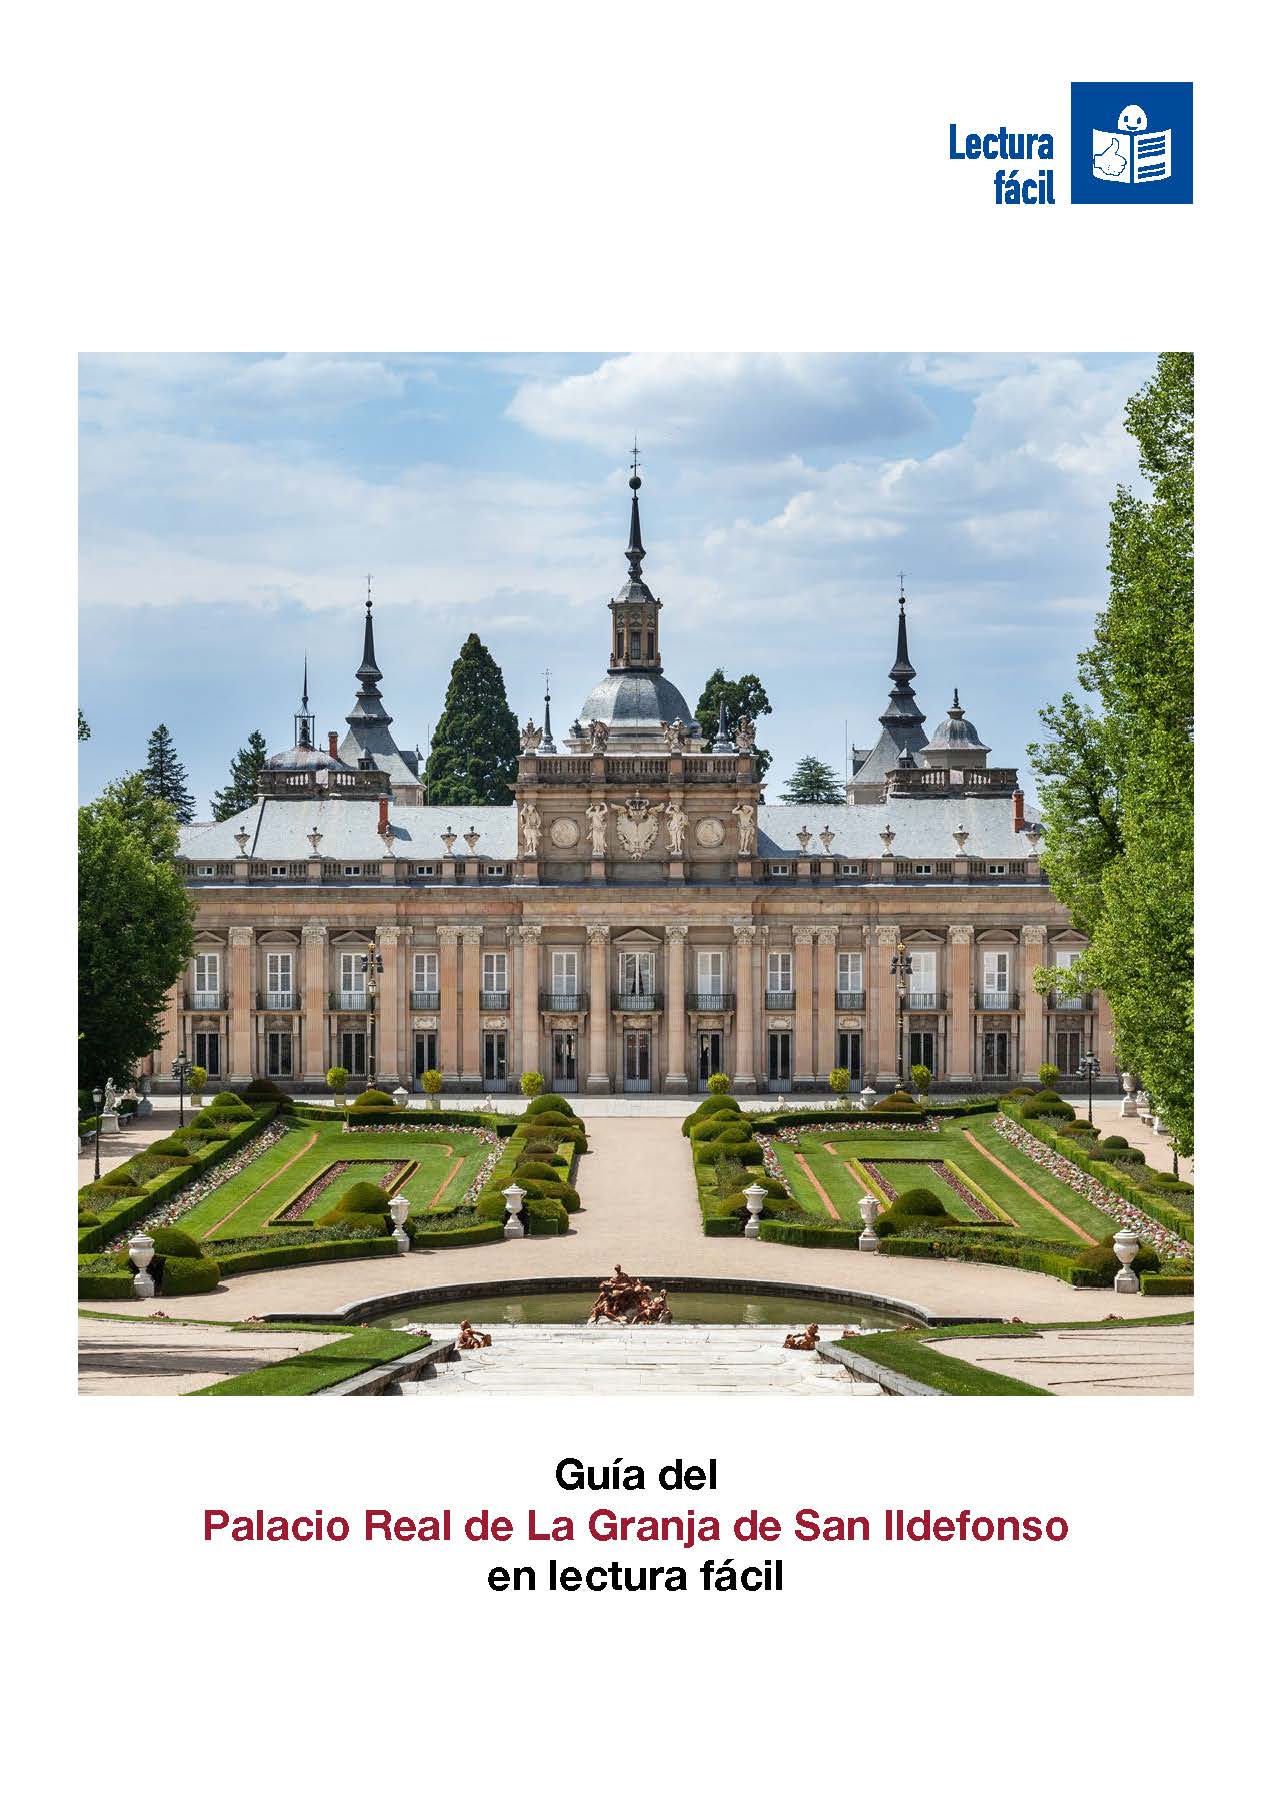 Imagen noticia Portada de la Guía del Palacio Real de La Granja de San Ildefonso en lectura fácil